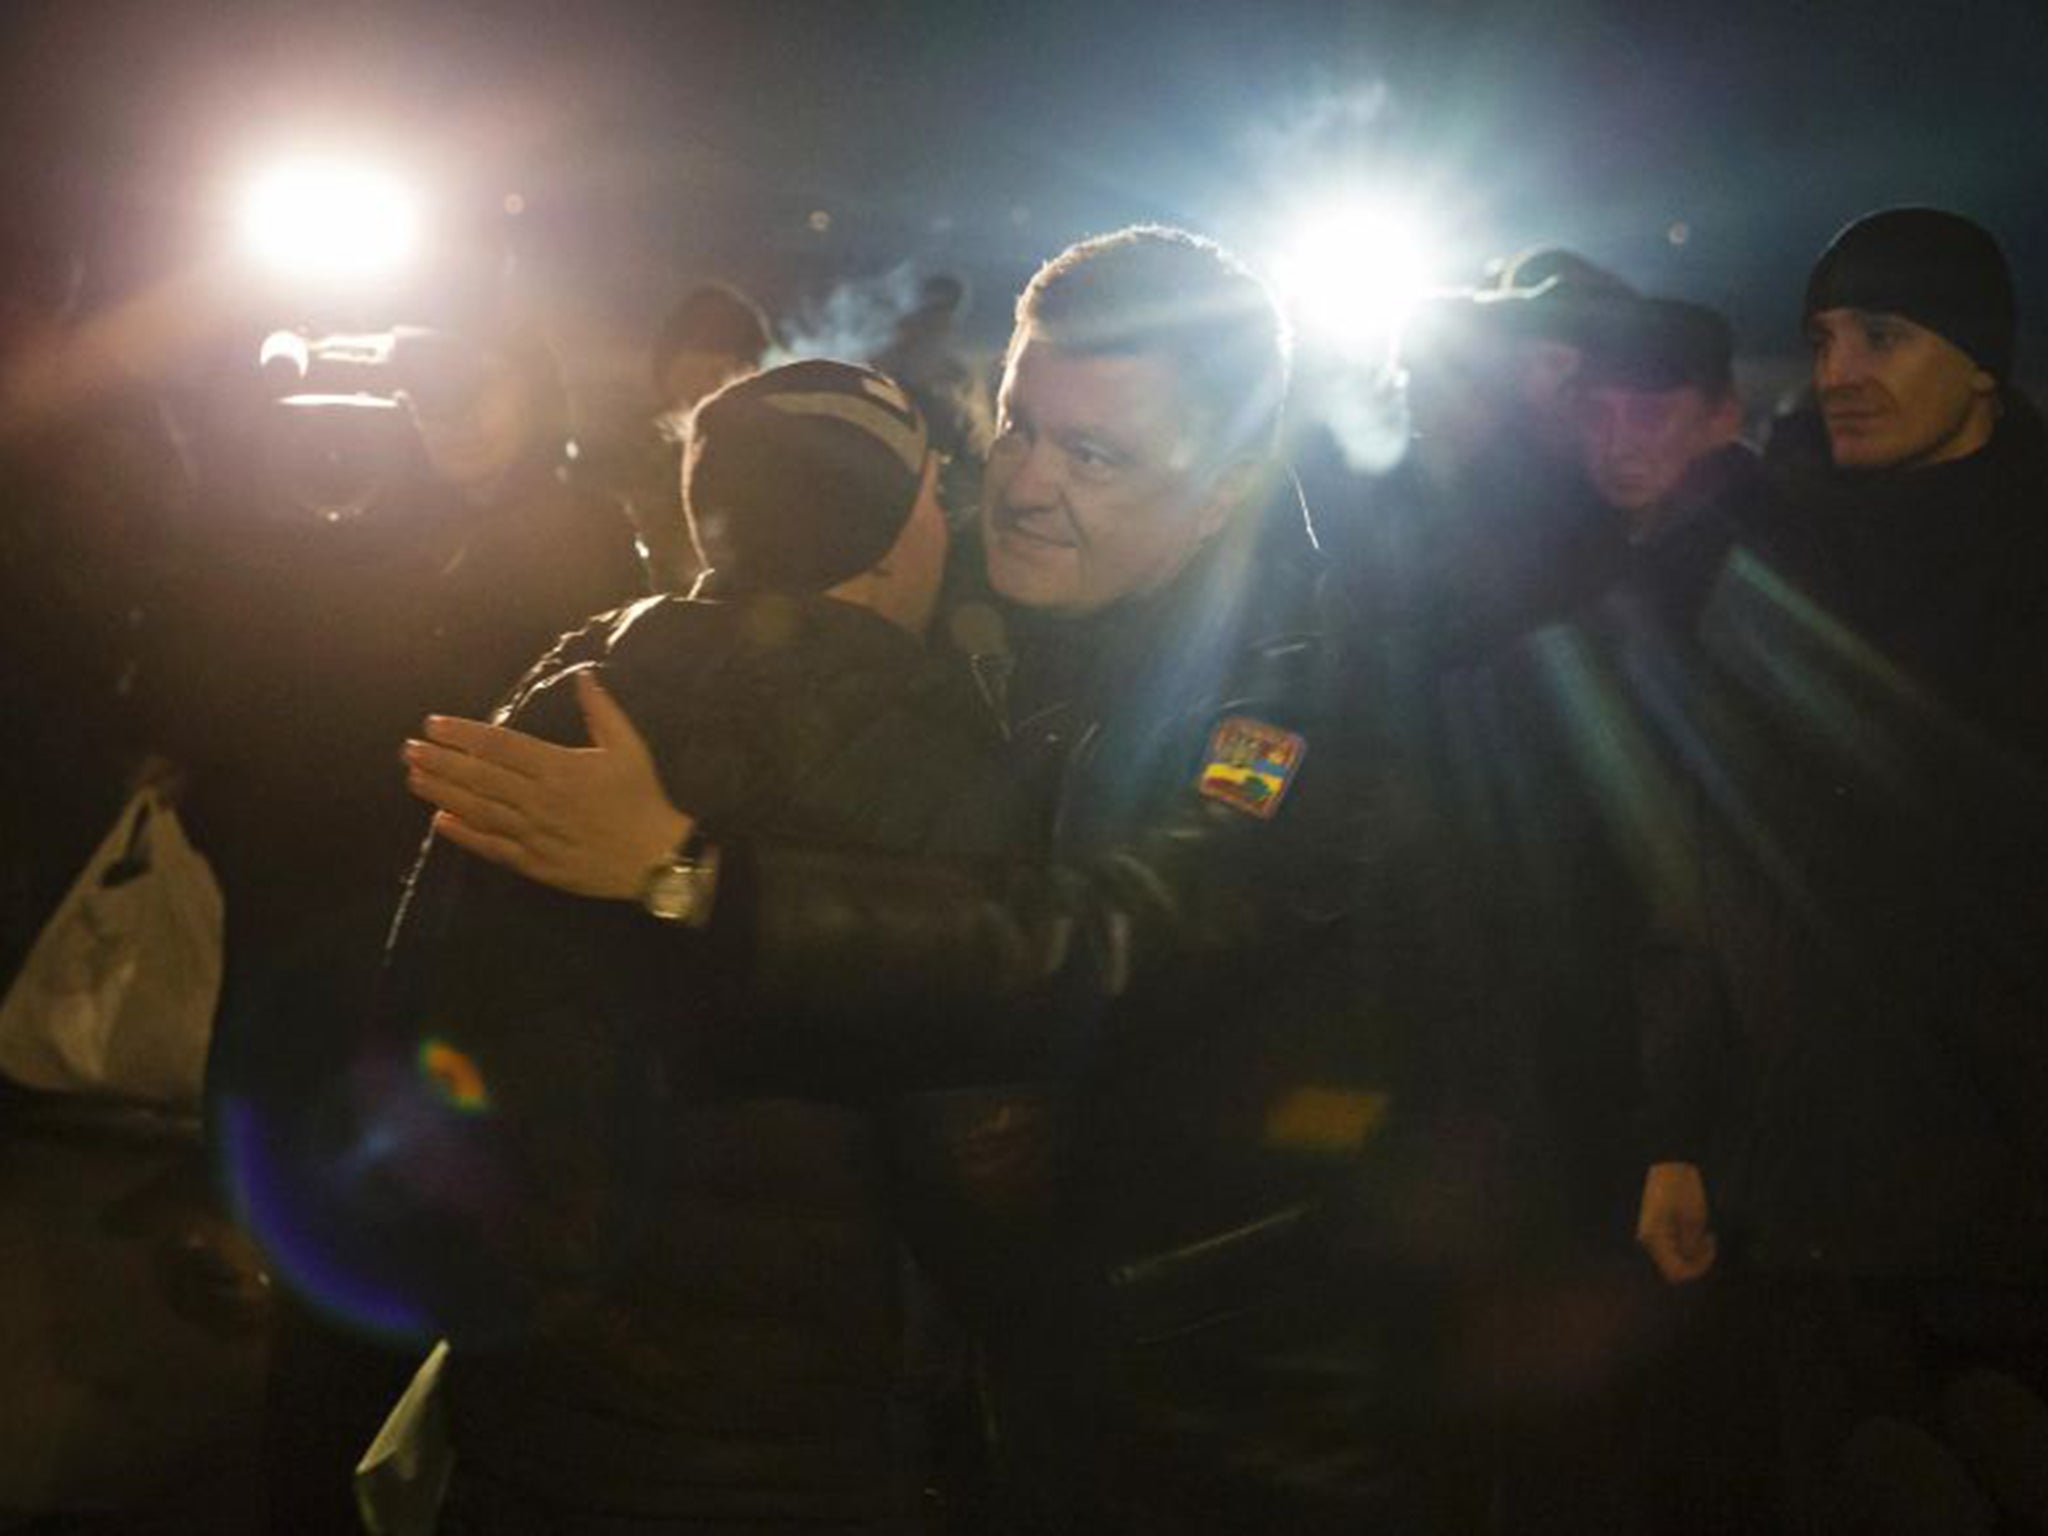 Ukraine’s President Petro Poroshenko hugs a freed prisoner